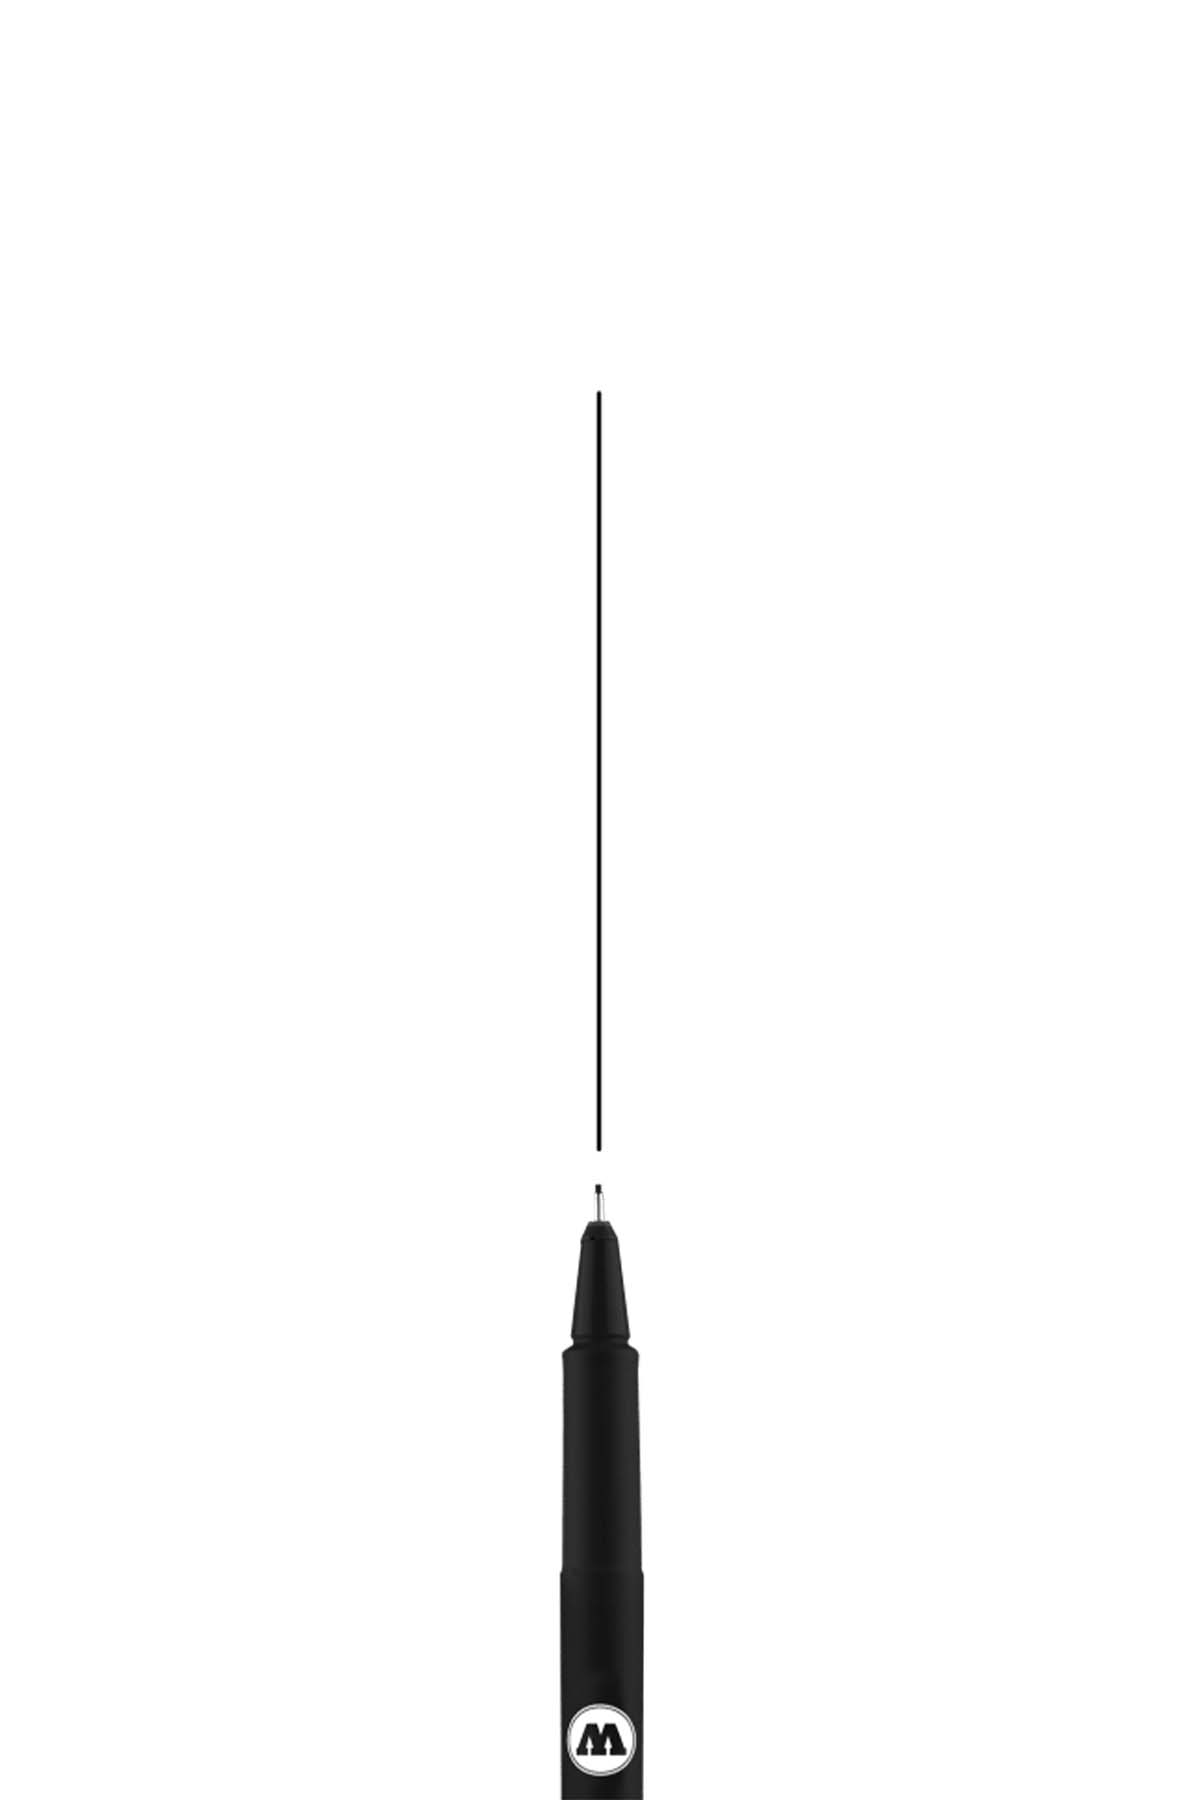 Molotow BLACKLINER Marker 0.5mm